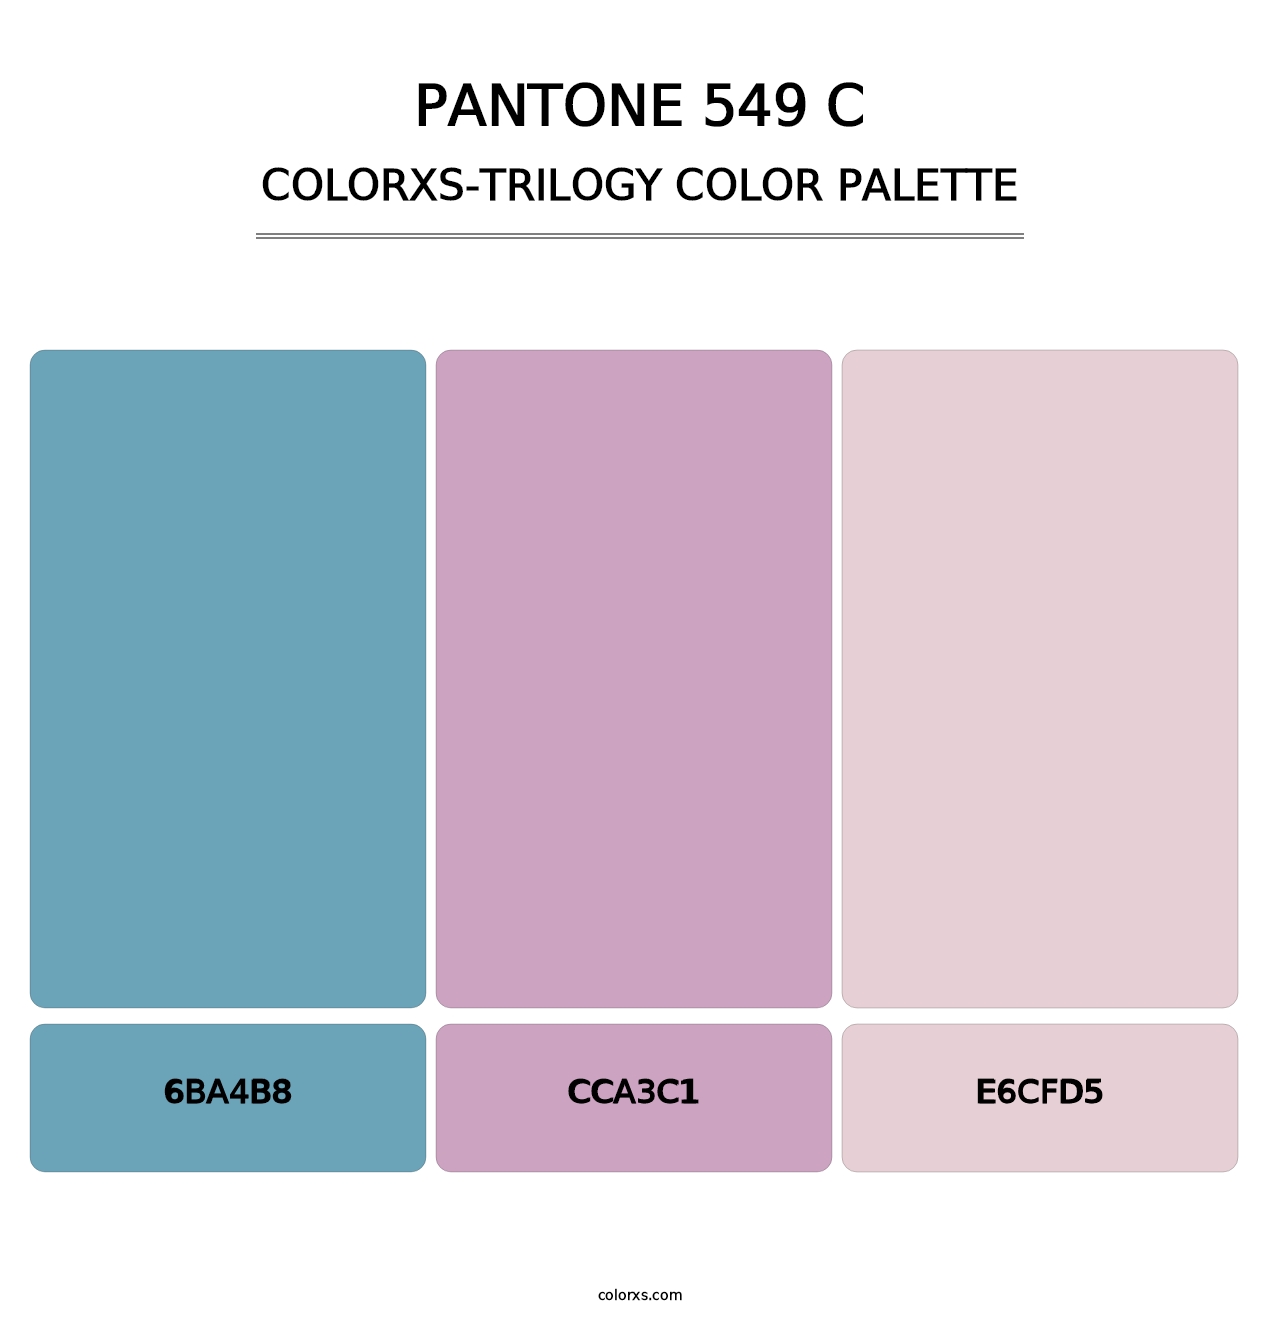 PANTONE 549 C - Colorxs Trilogy Palette